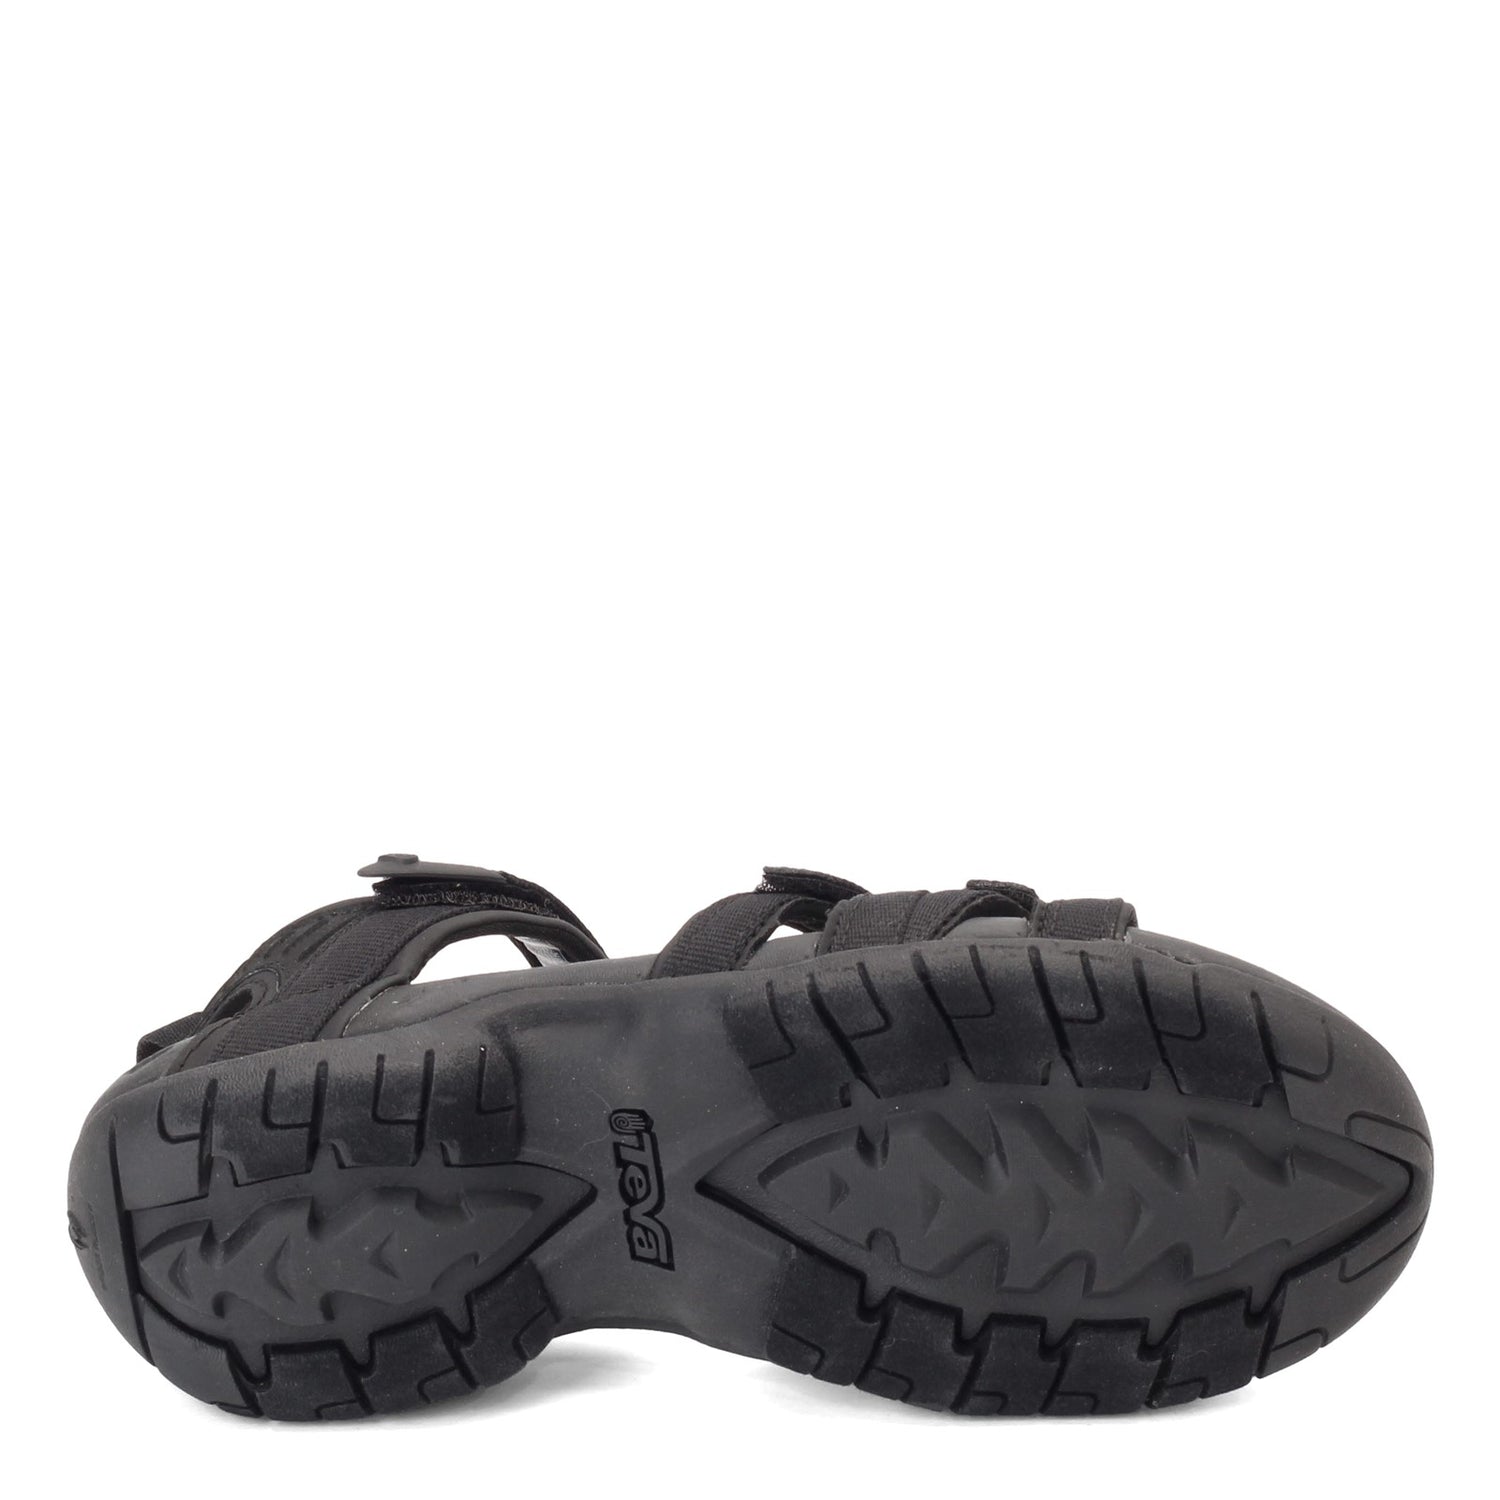 Peltz Shoes  Women's Teva Tirra Sandal BLACK BLACK 4266-BKBK